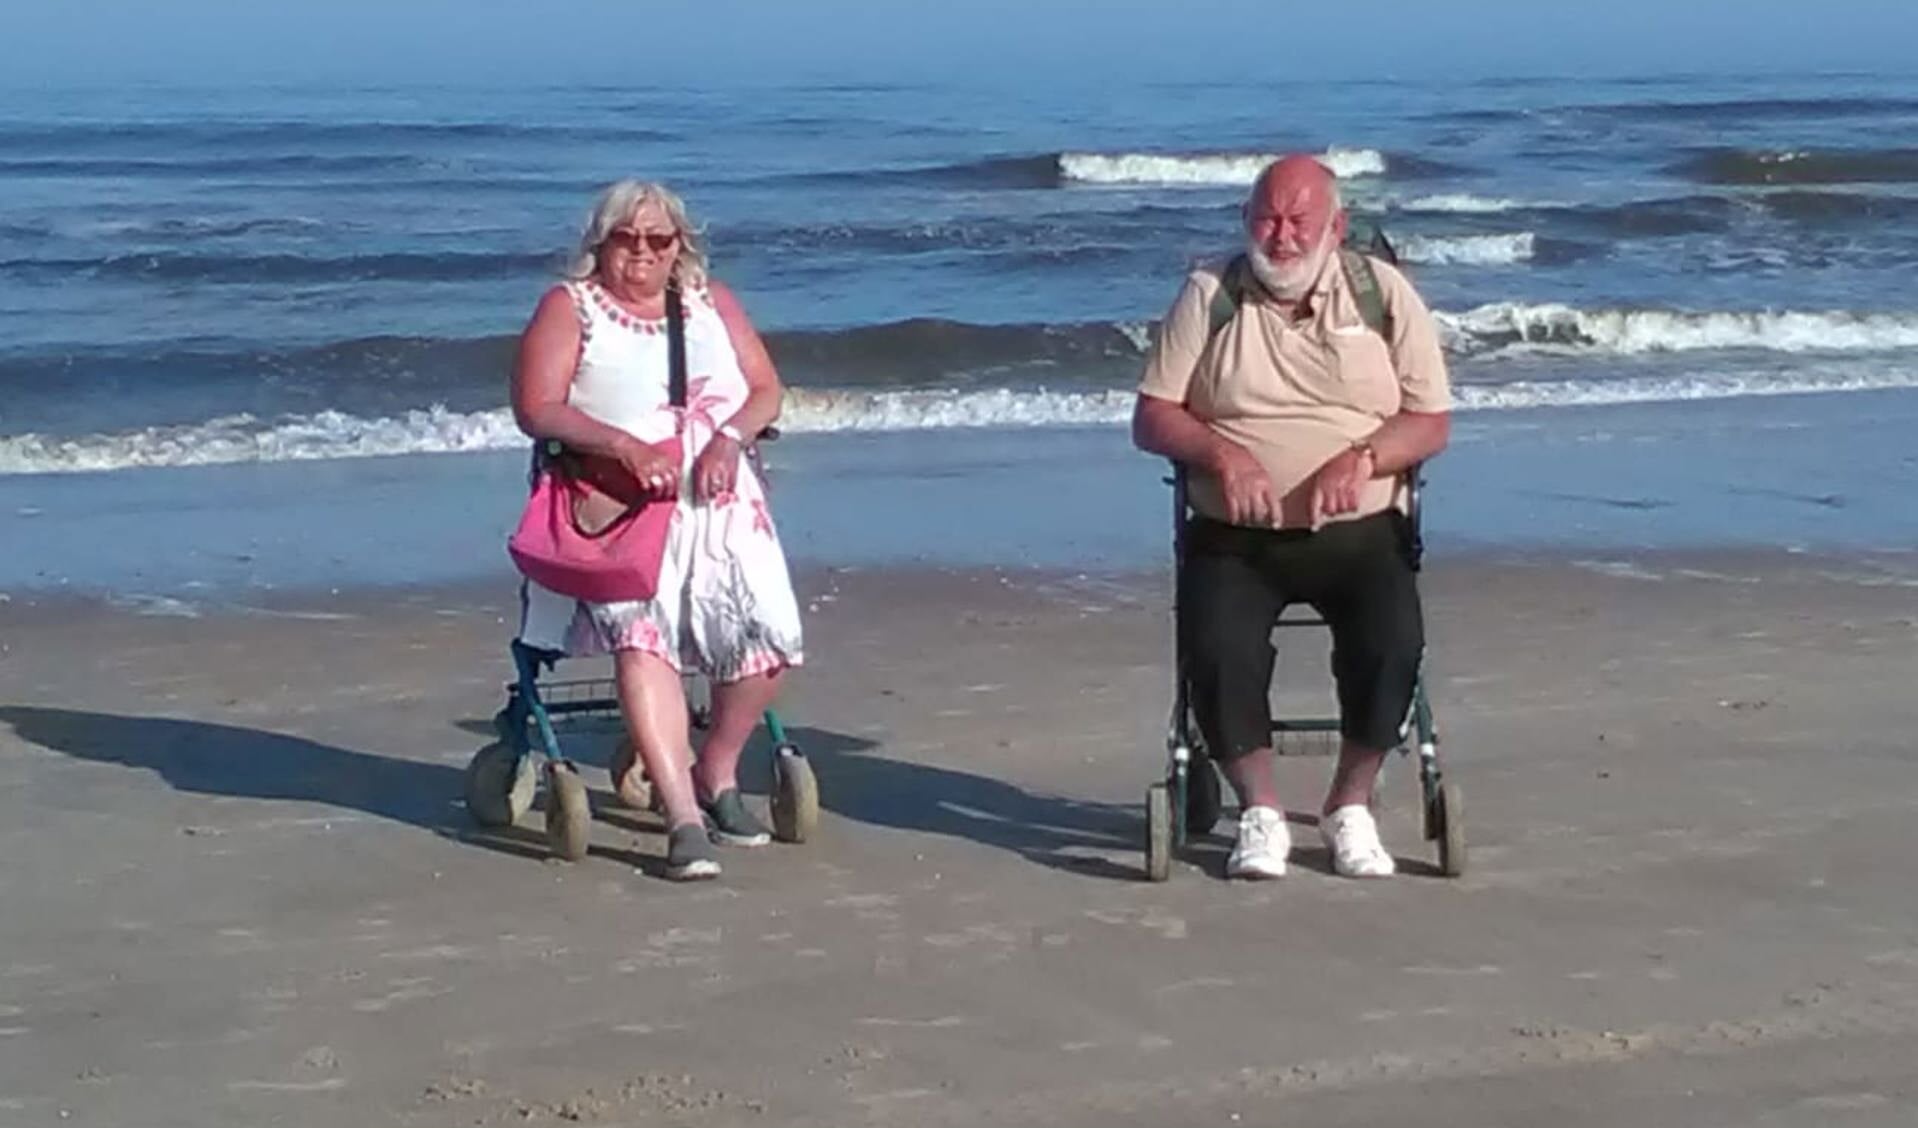 Is het niet geweldig onze Egmond Bastards van het strand. Alette en Jack. Hij is nu 66 jaar op het Noorderstrand. Dit is zeker de moeite waard om even onder de aandacht te brengen. (Foto: Joerg Schuermann).